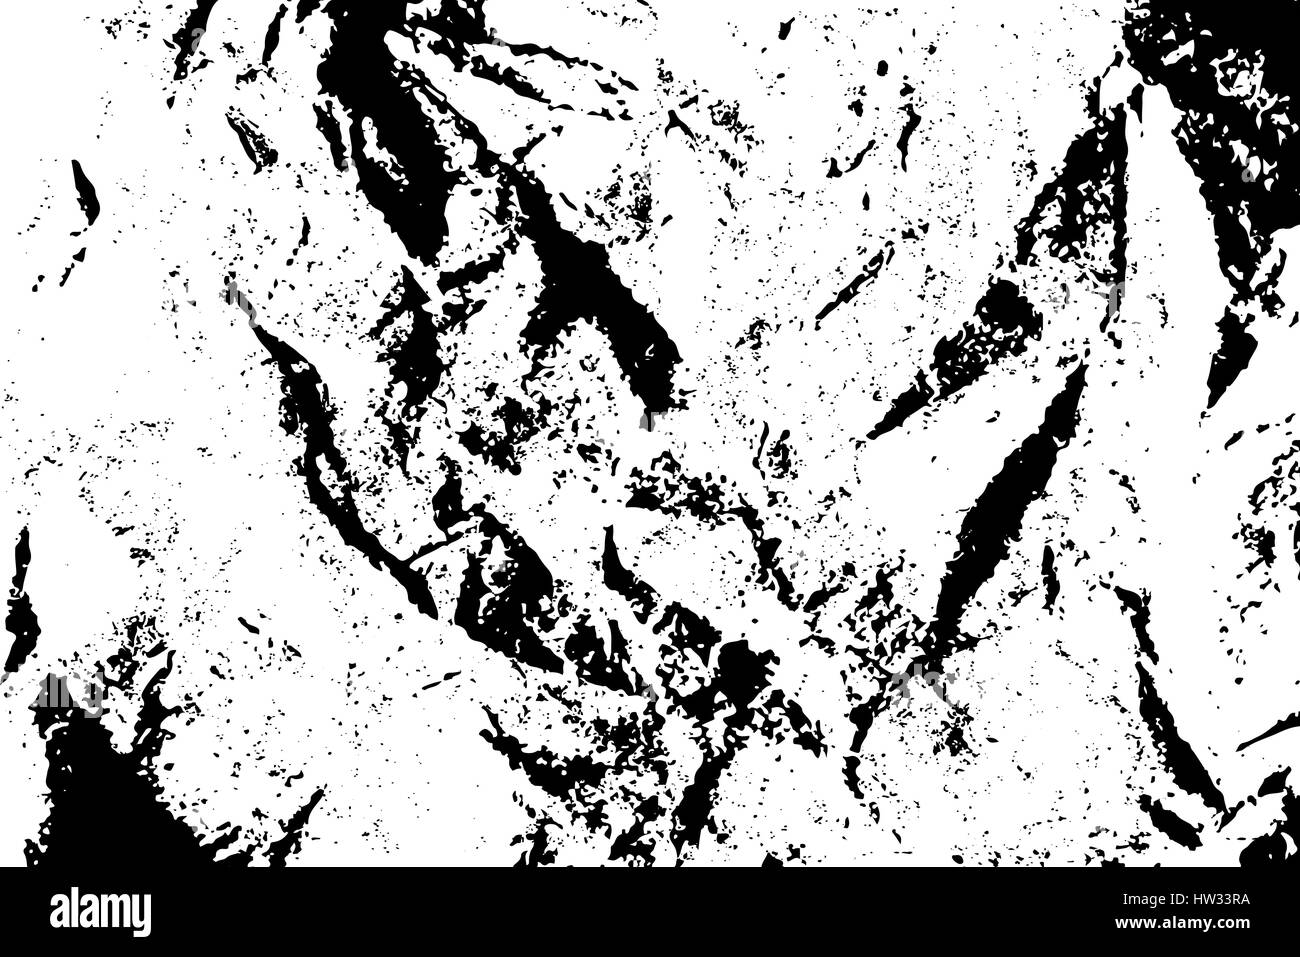 Texture grunge isolés de papier en noir et blanc, vintage background ressource. Vecteur EPS10. Illustration de Vecteur